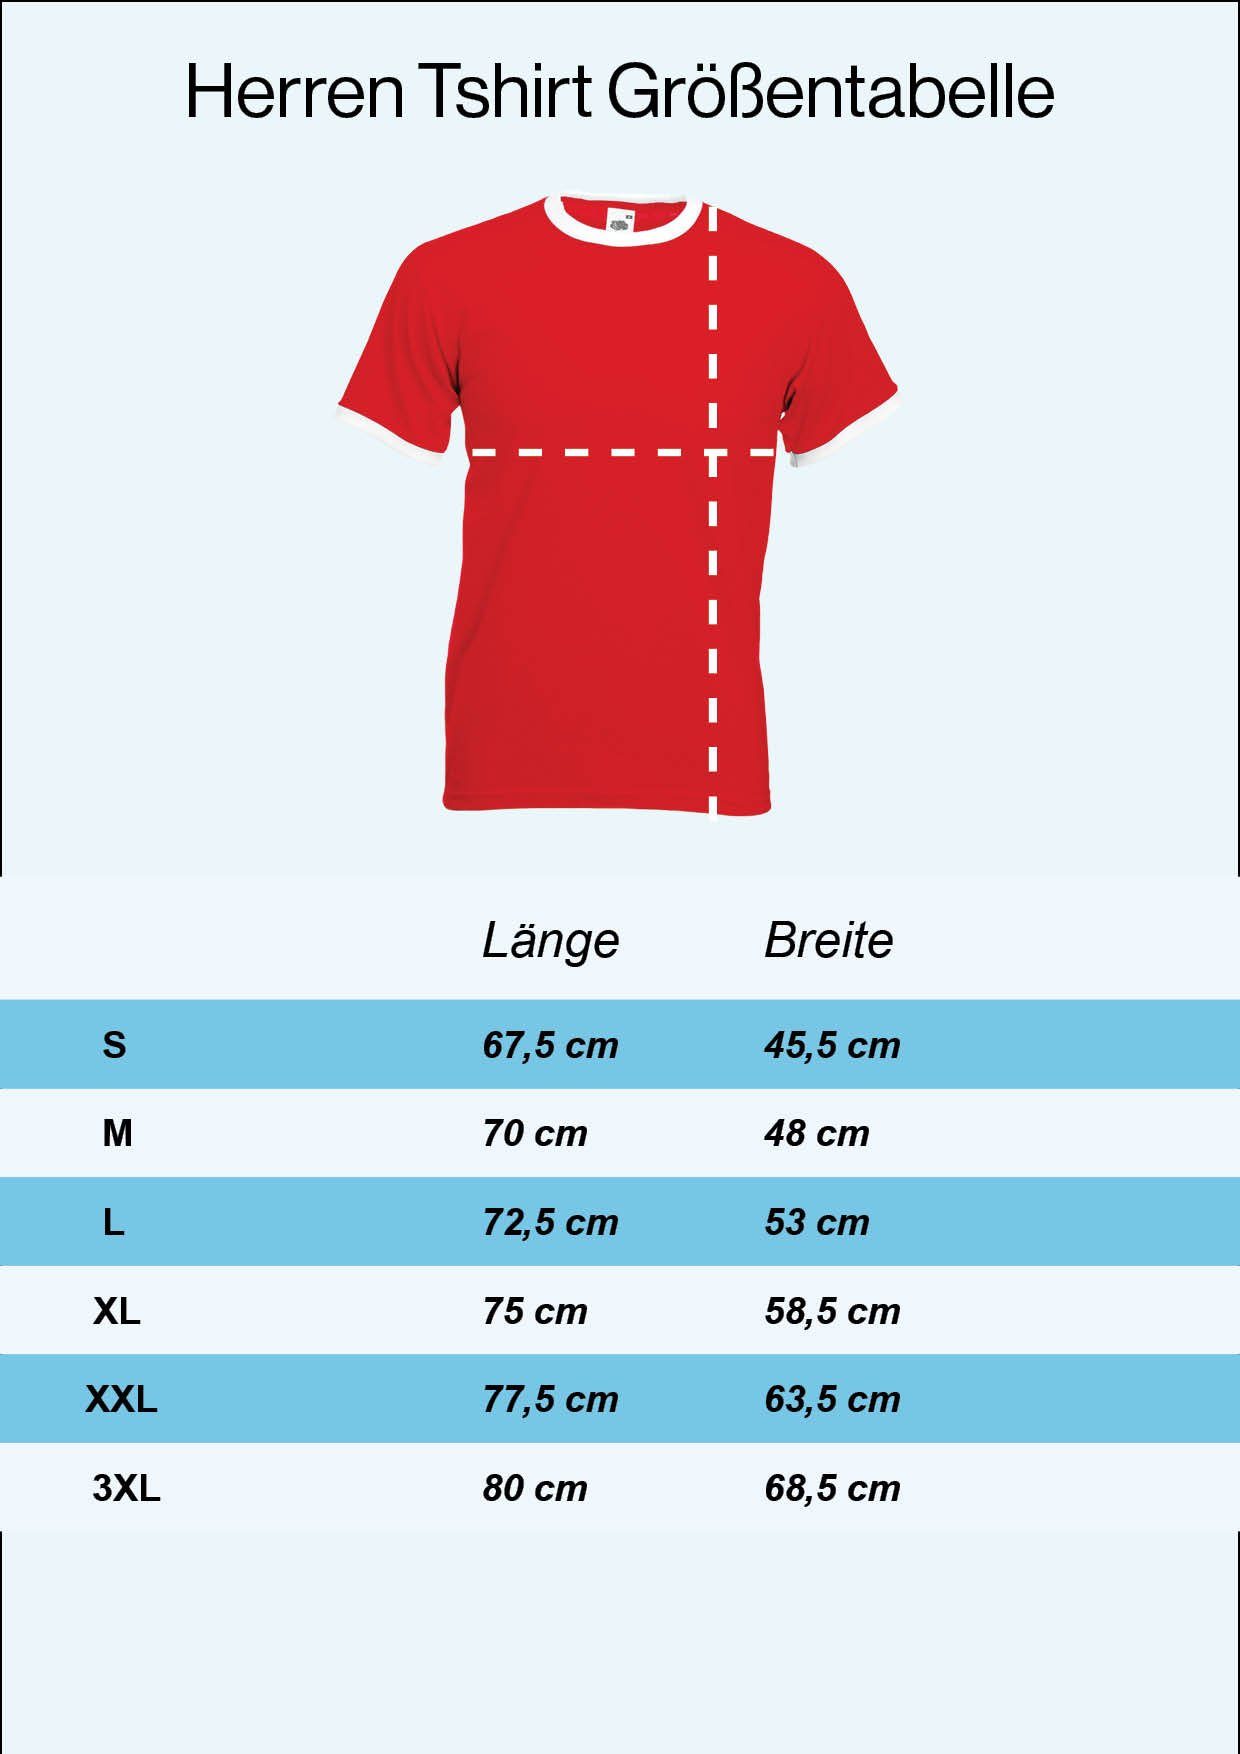 XL im Fußball Marokko Trikot Youth trendigem Look Herren Designz T-Shirt Motiv mit T-Shirt